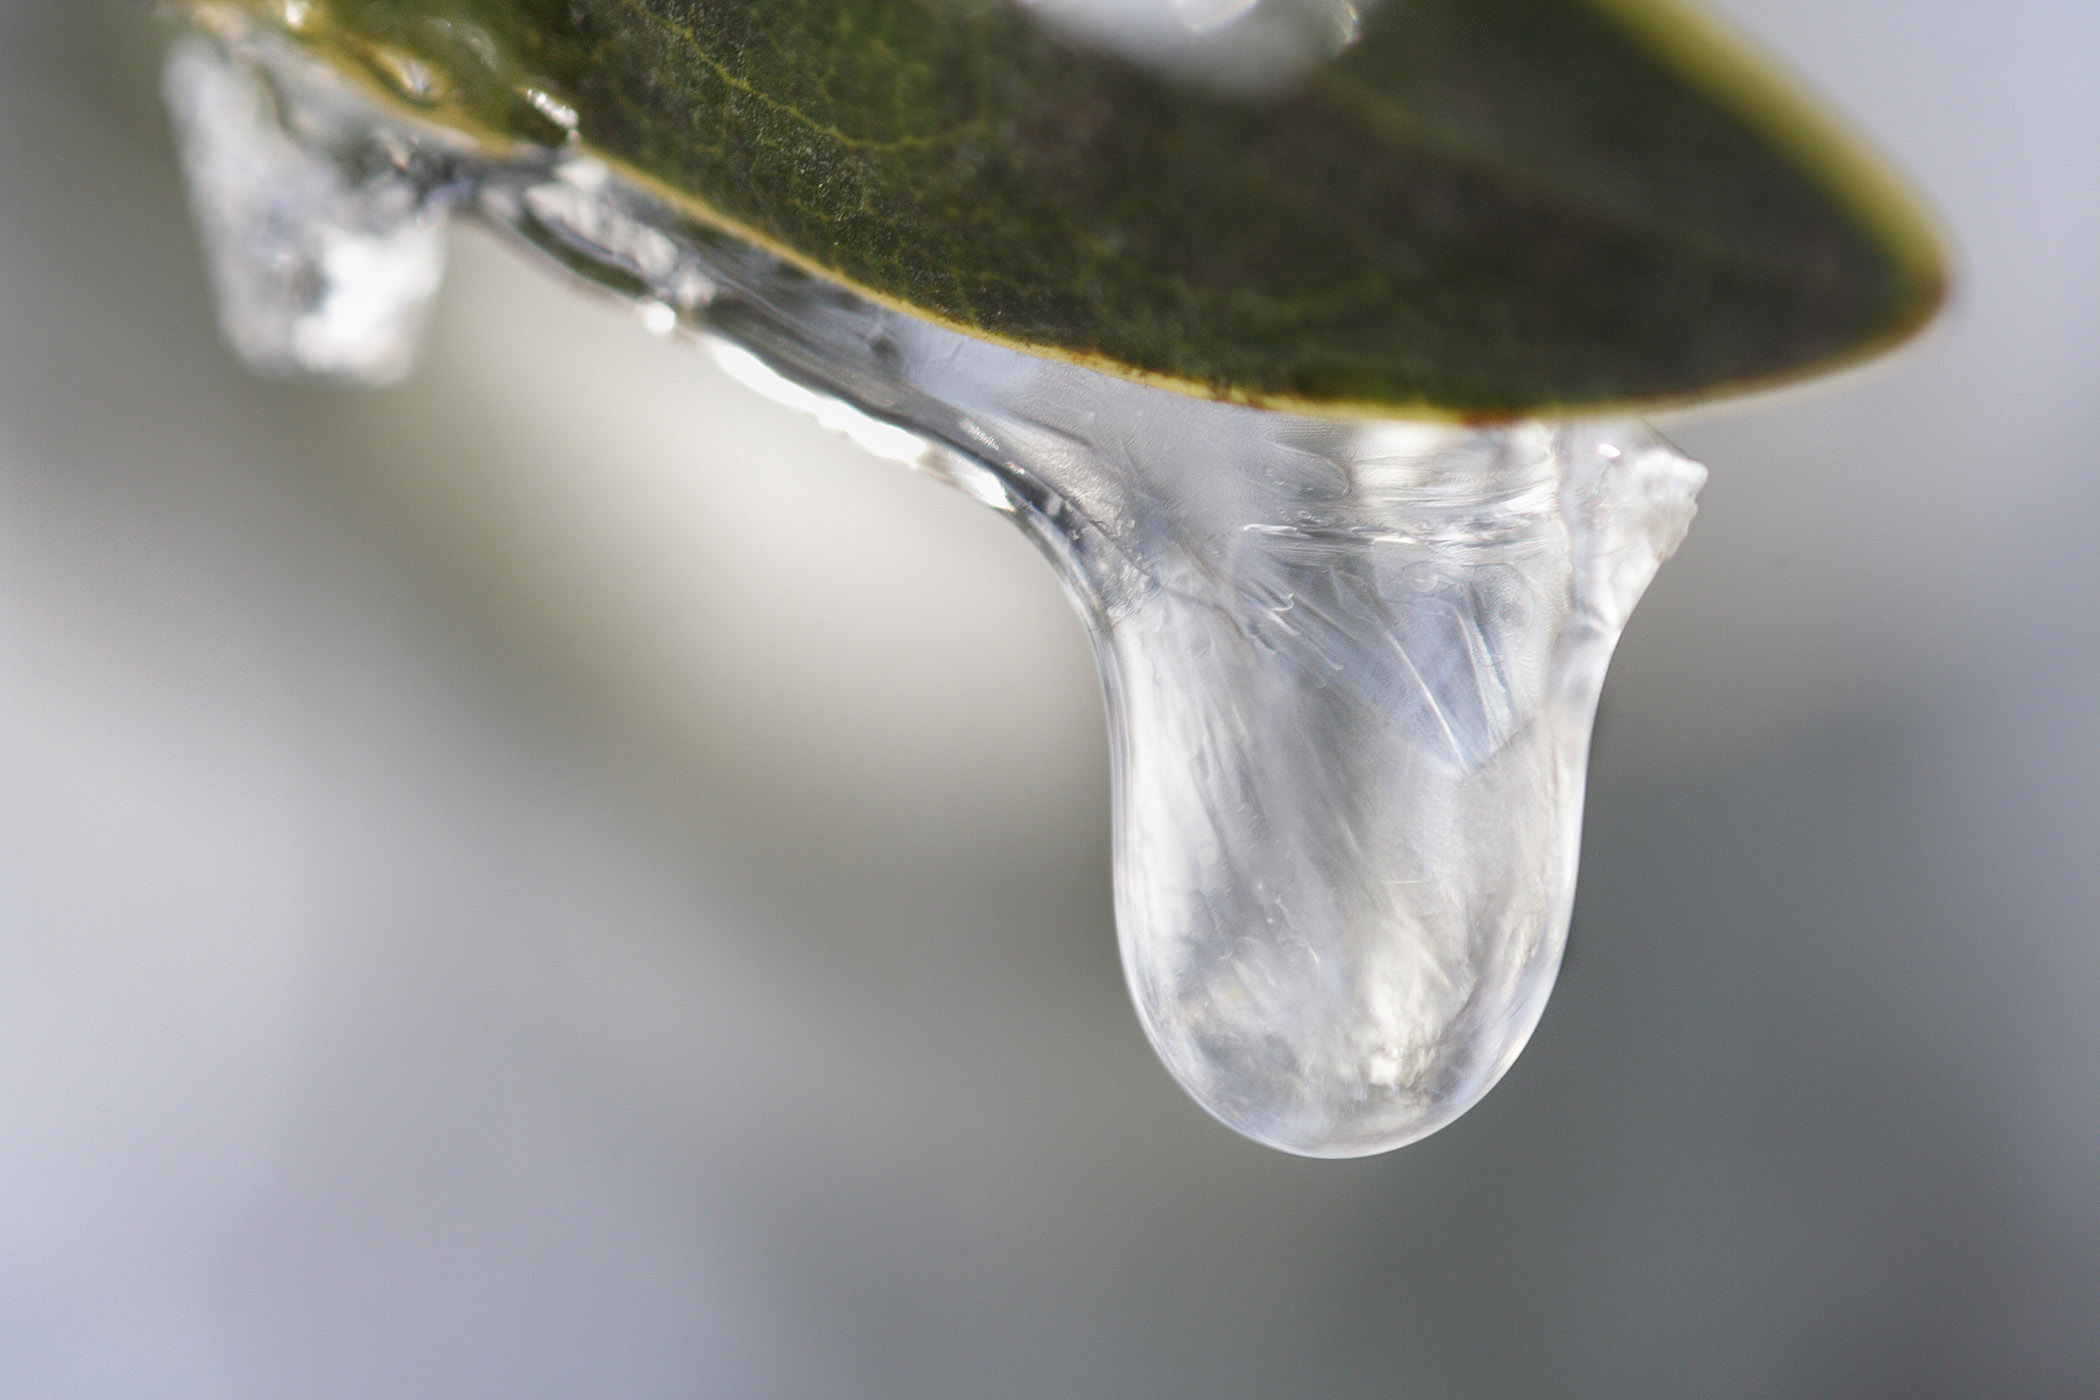 File:Frozen droplet.jpg - Wikimedia Commons